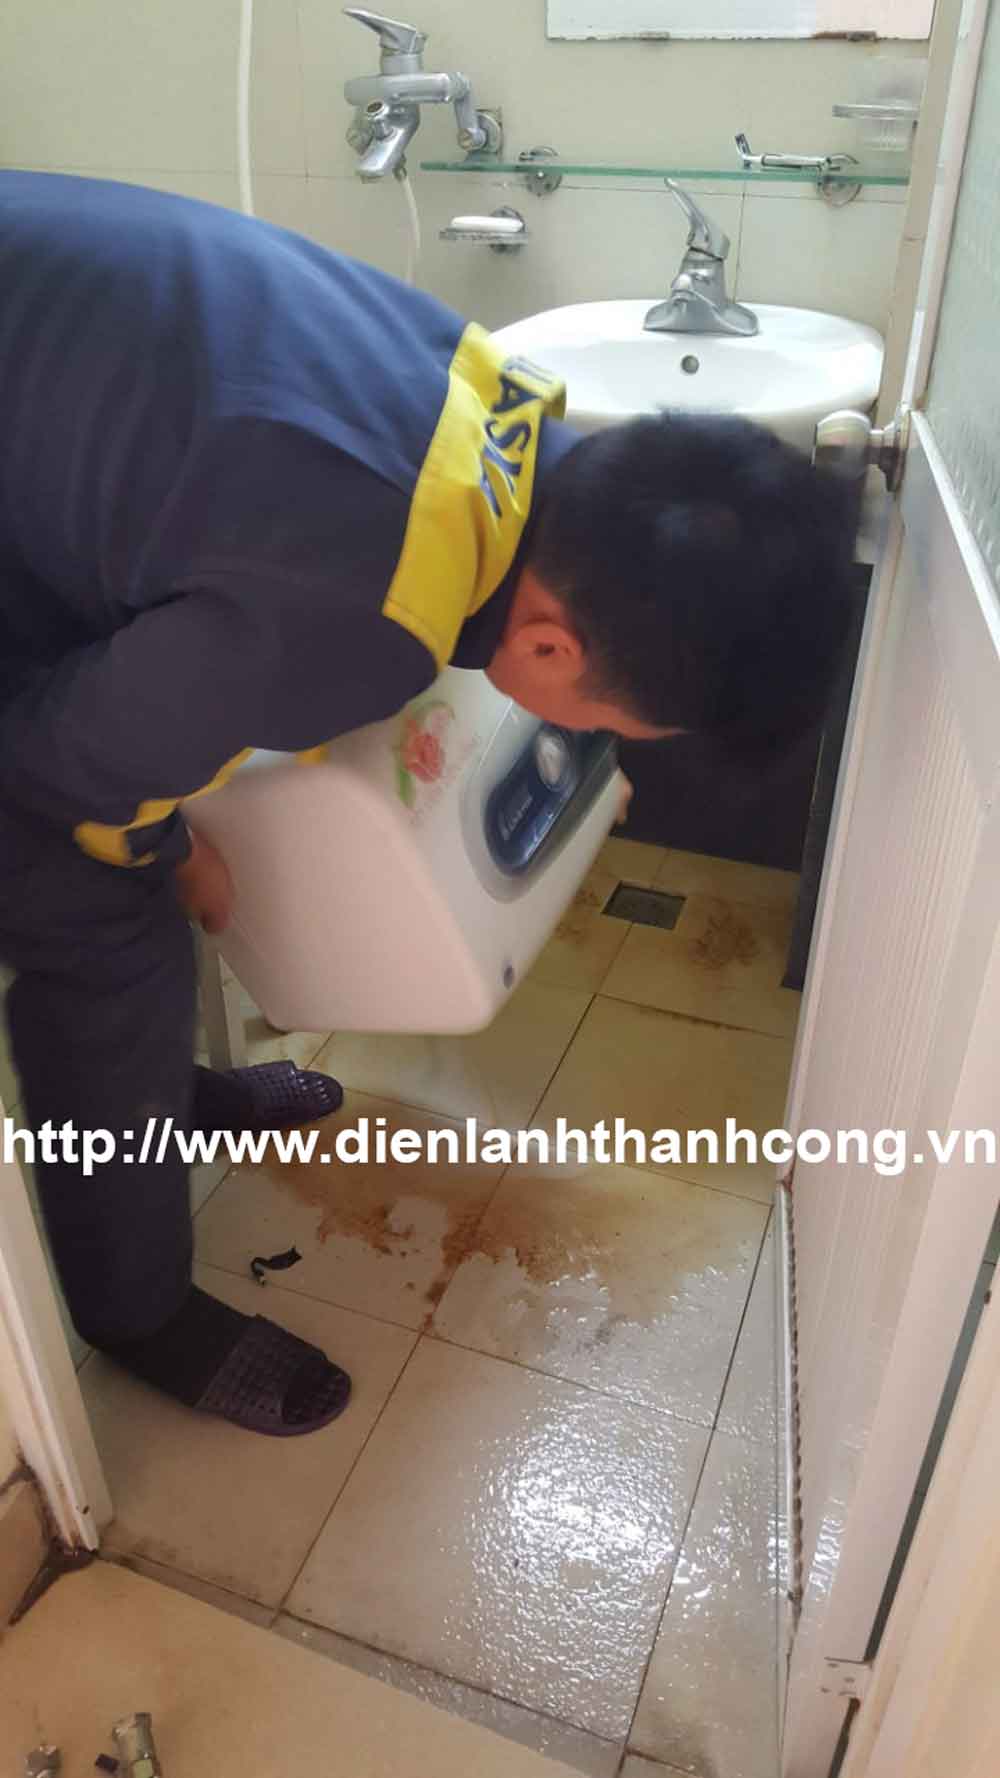 Sửa chữa bình nóng lạnh giá rẻ tại Đà Nẵng, Hà Nội